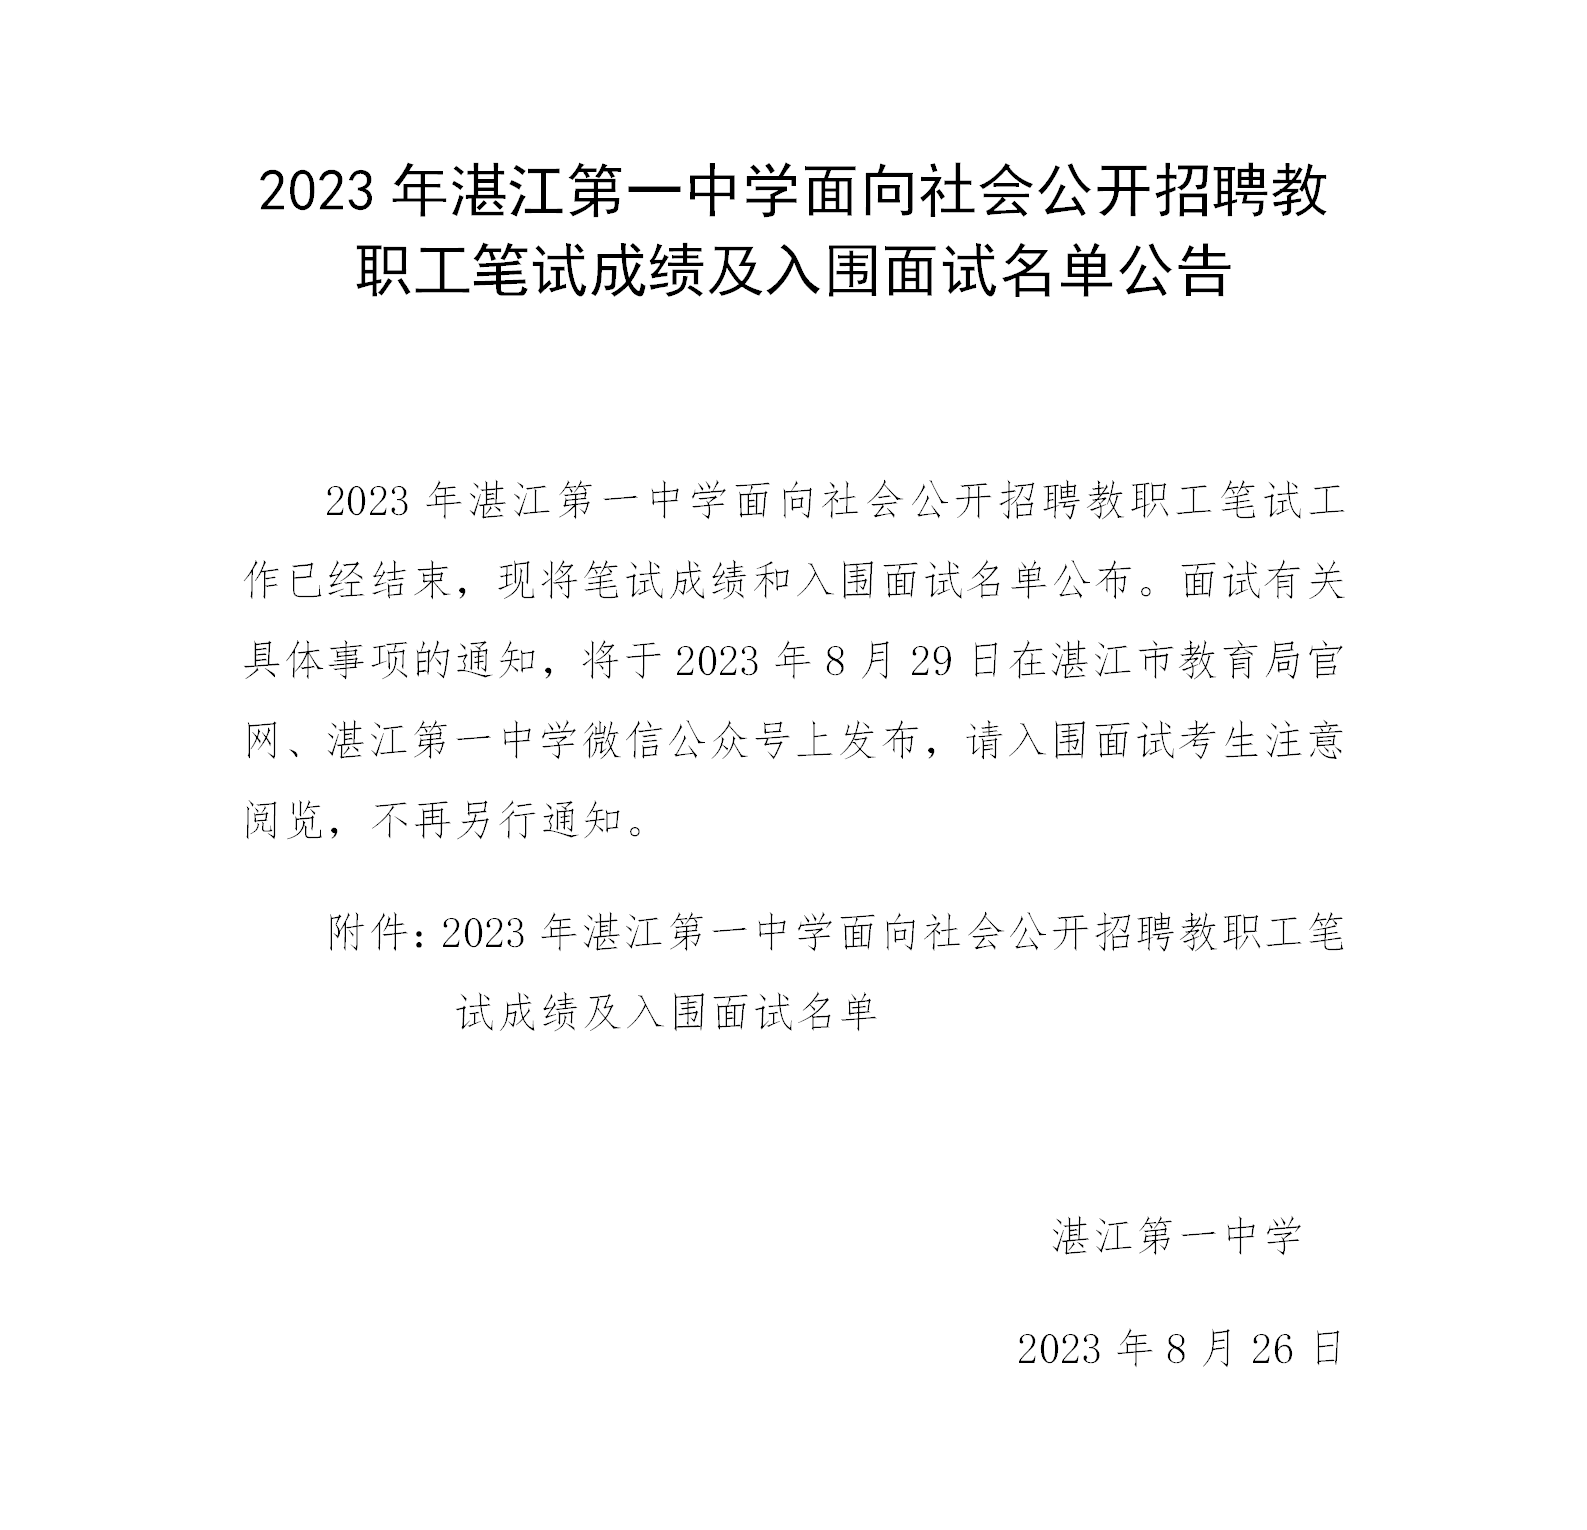 2023年湛江第一中学面向社会公开招聘教职工笔试成绩公告.png